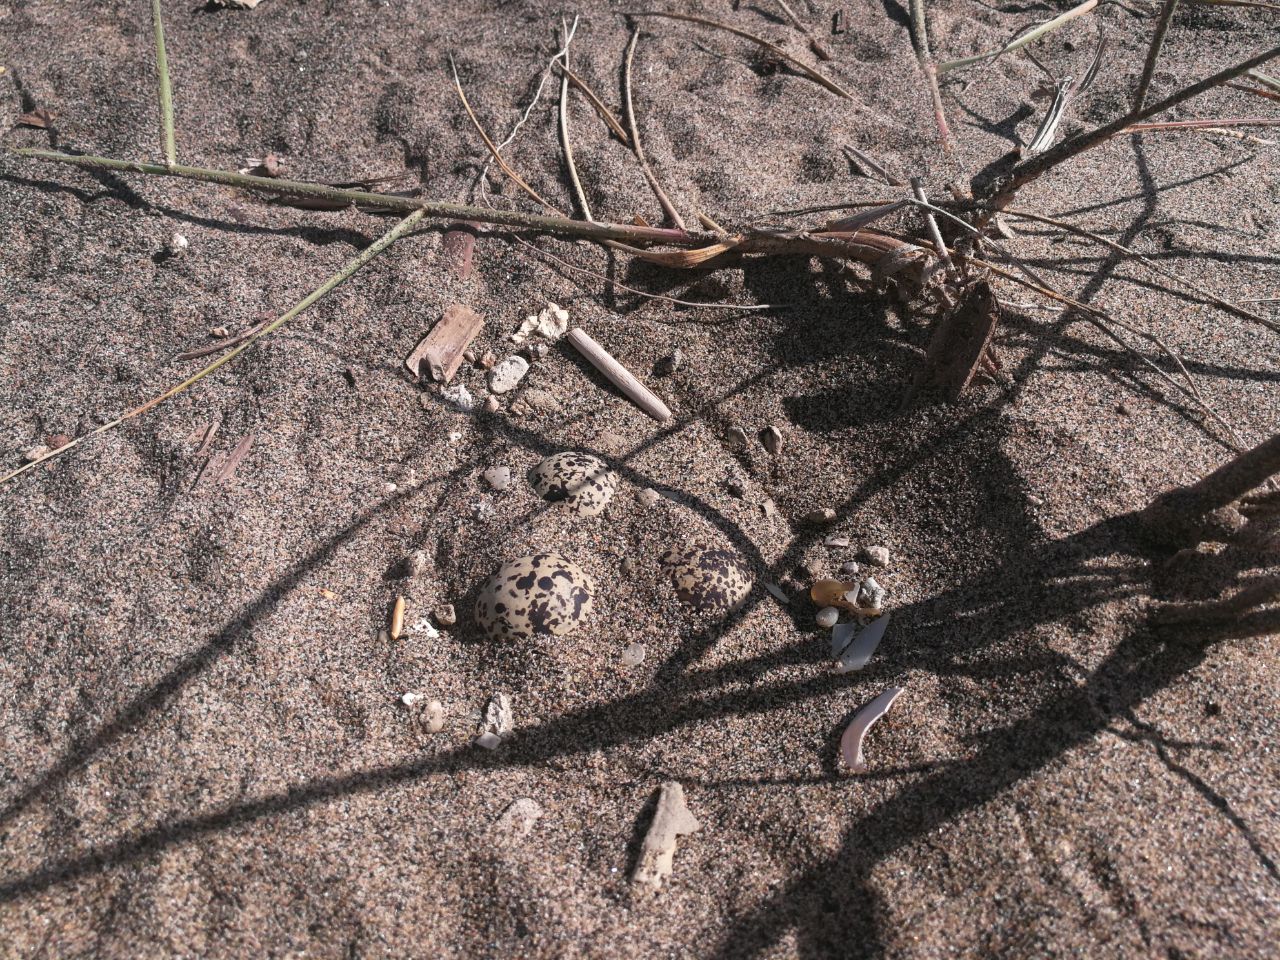 Ardea, inaspettata scoperta in spiaggia trovate uova uccelli rari